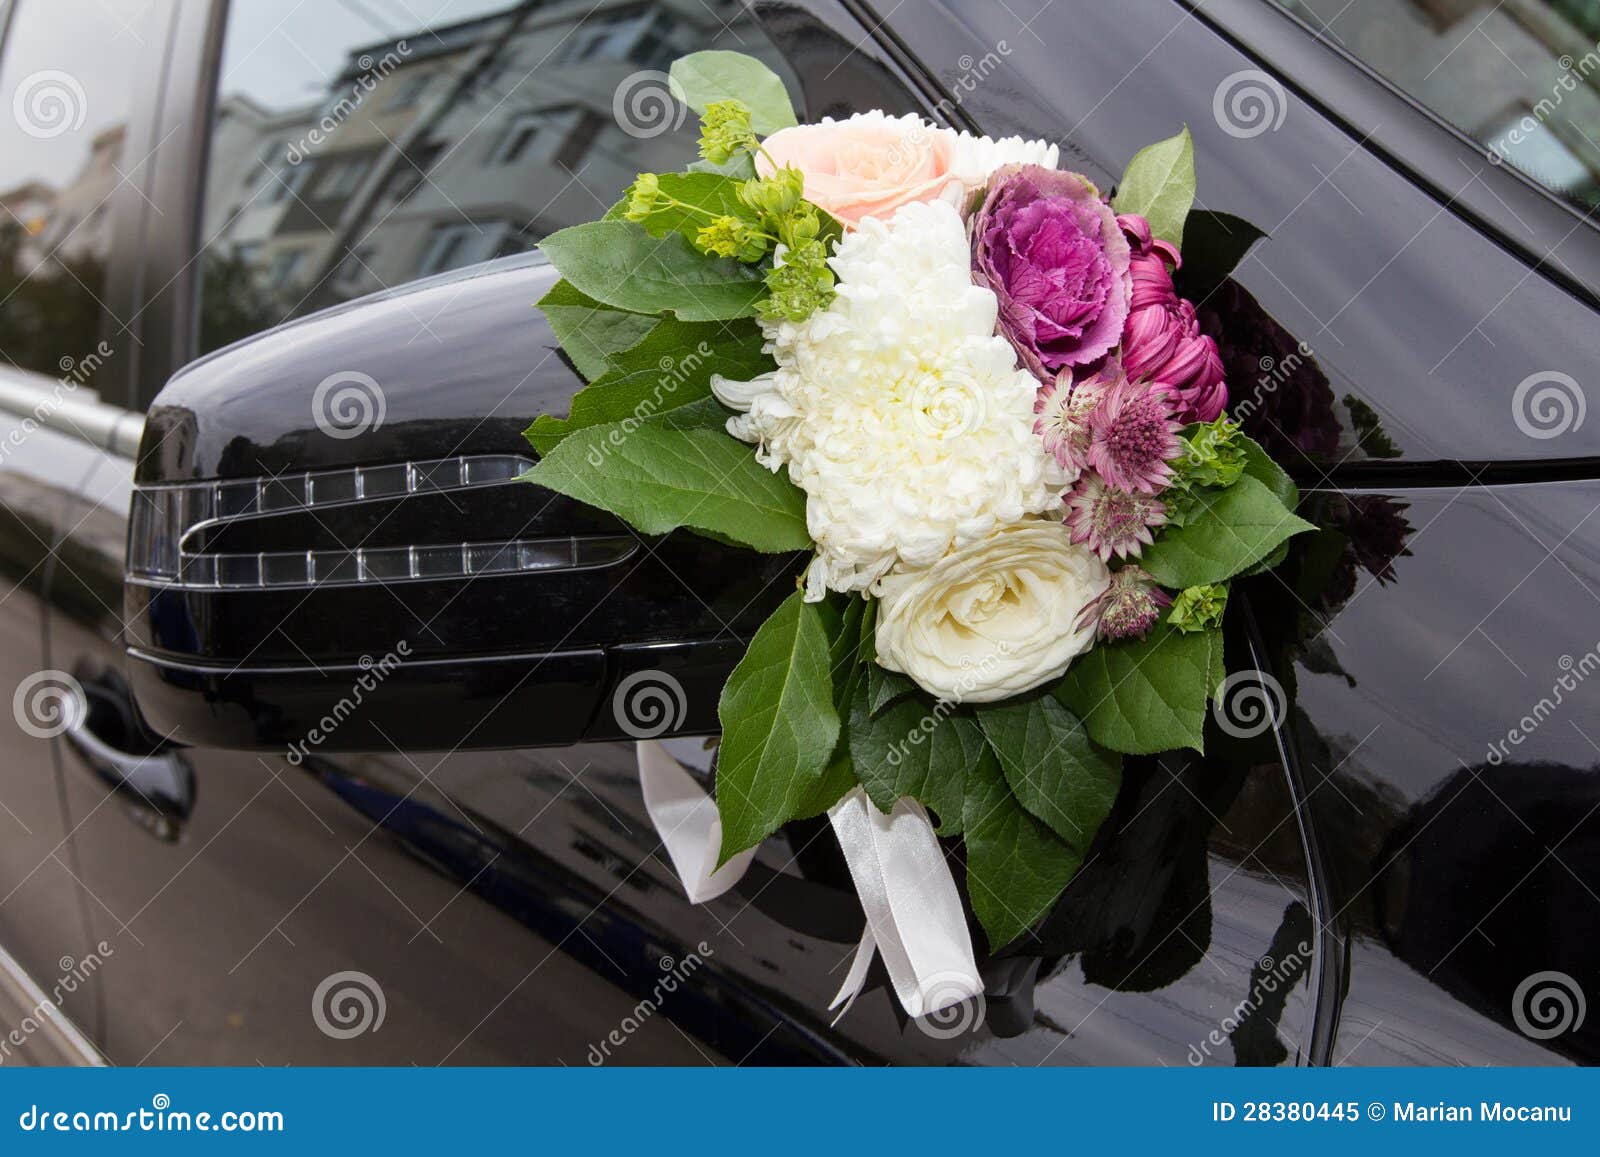 Wedding car decorations hi-res stock photography and images - Page, Wedding  Car Decorations